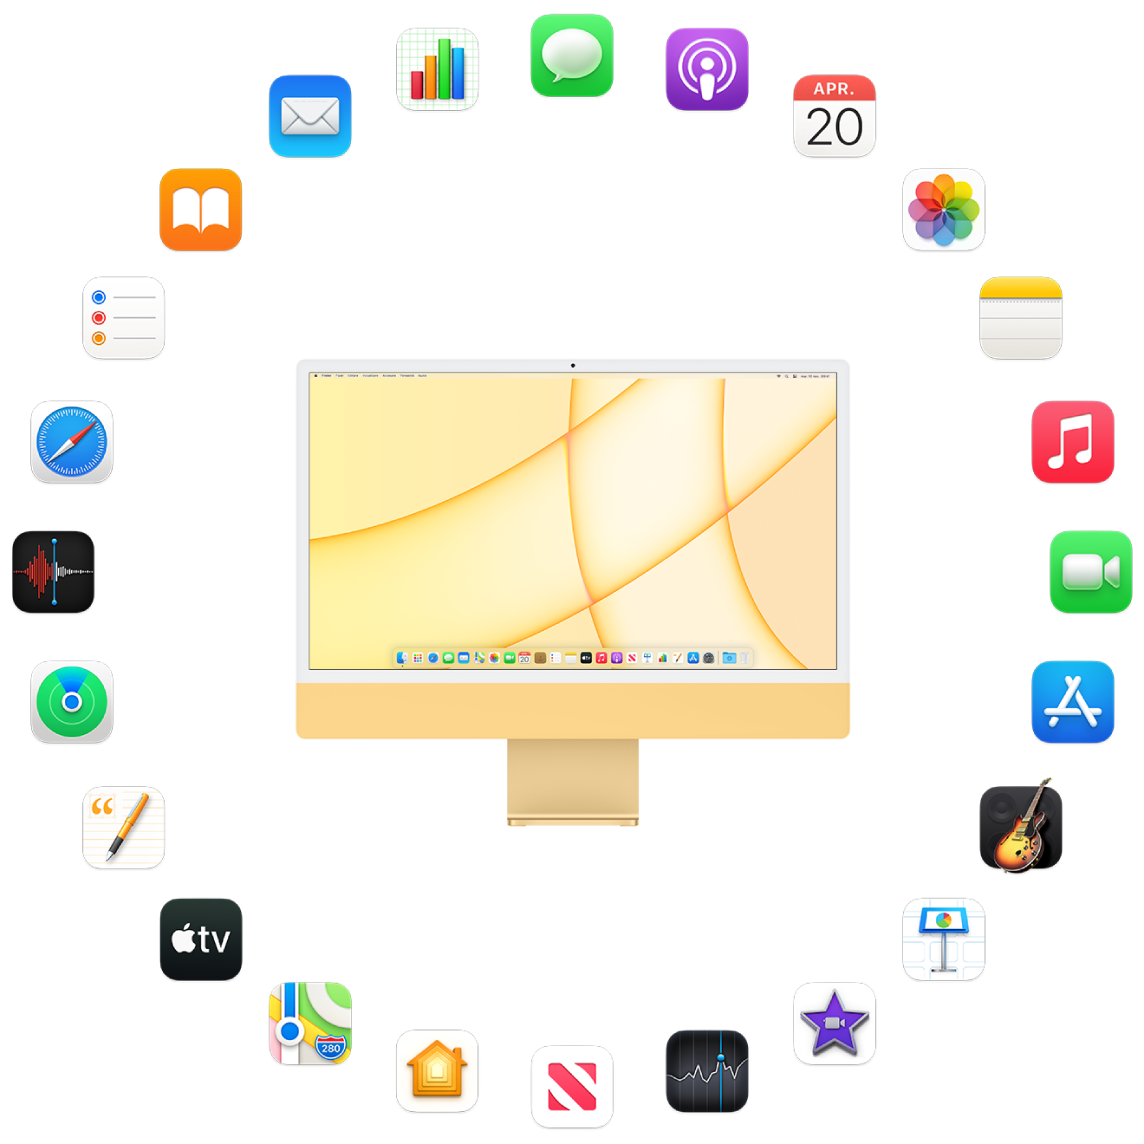 Un iMac înconjurat de pictogramele aplicațiilor integrate, descrise în secțiunile următoare.